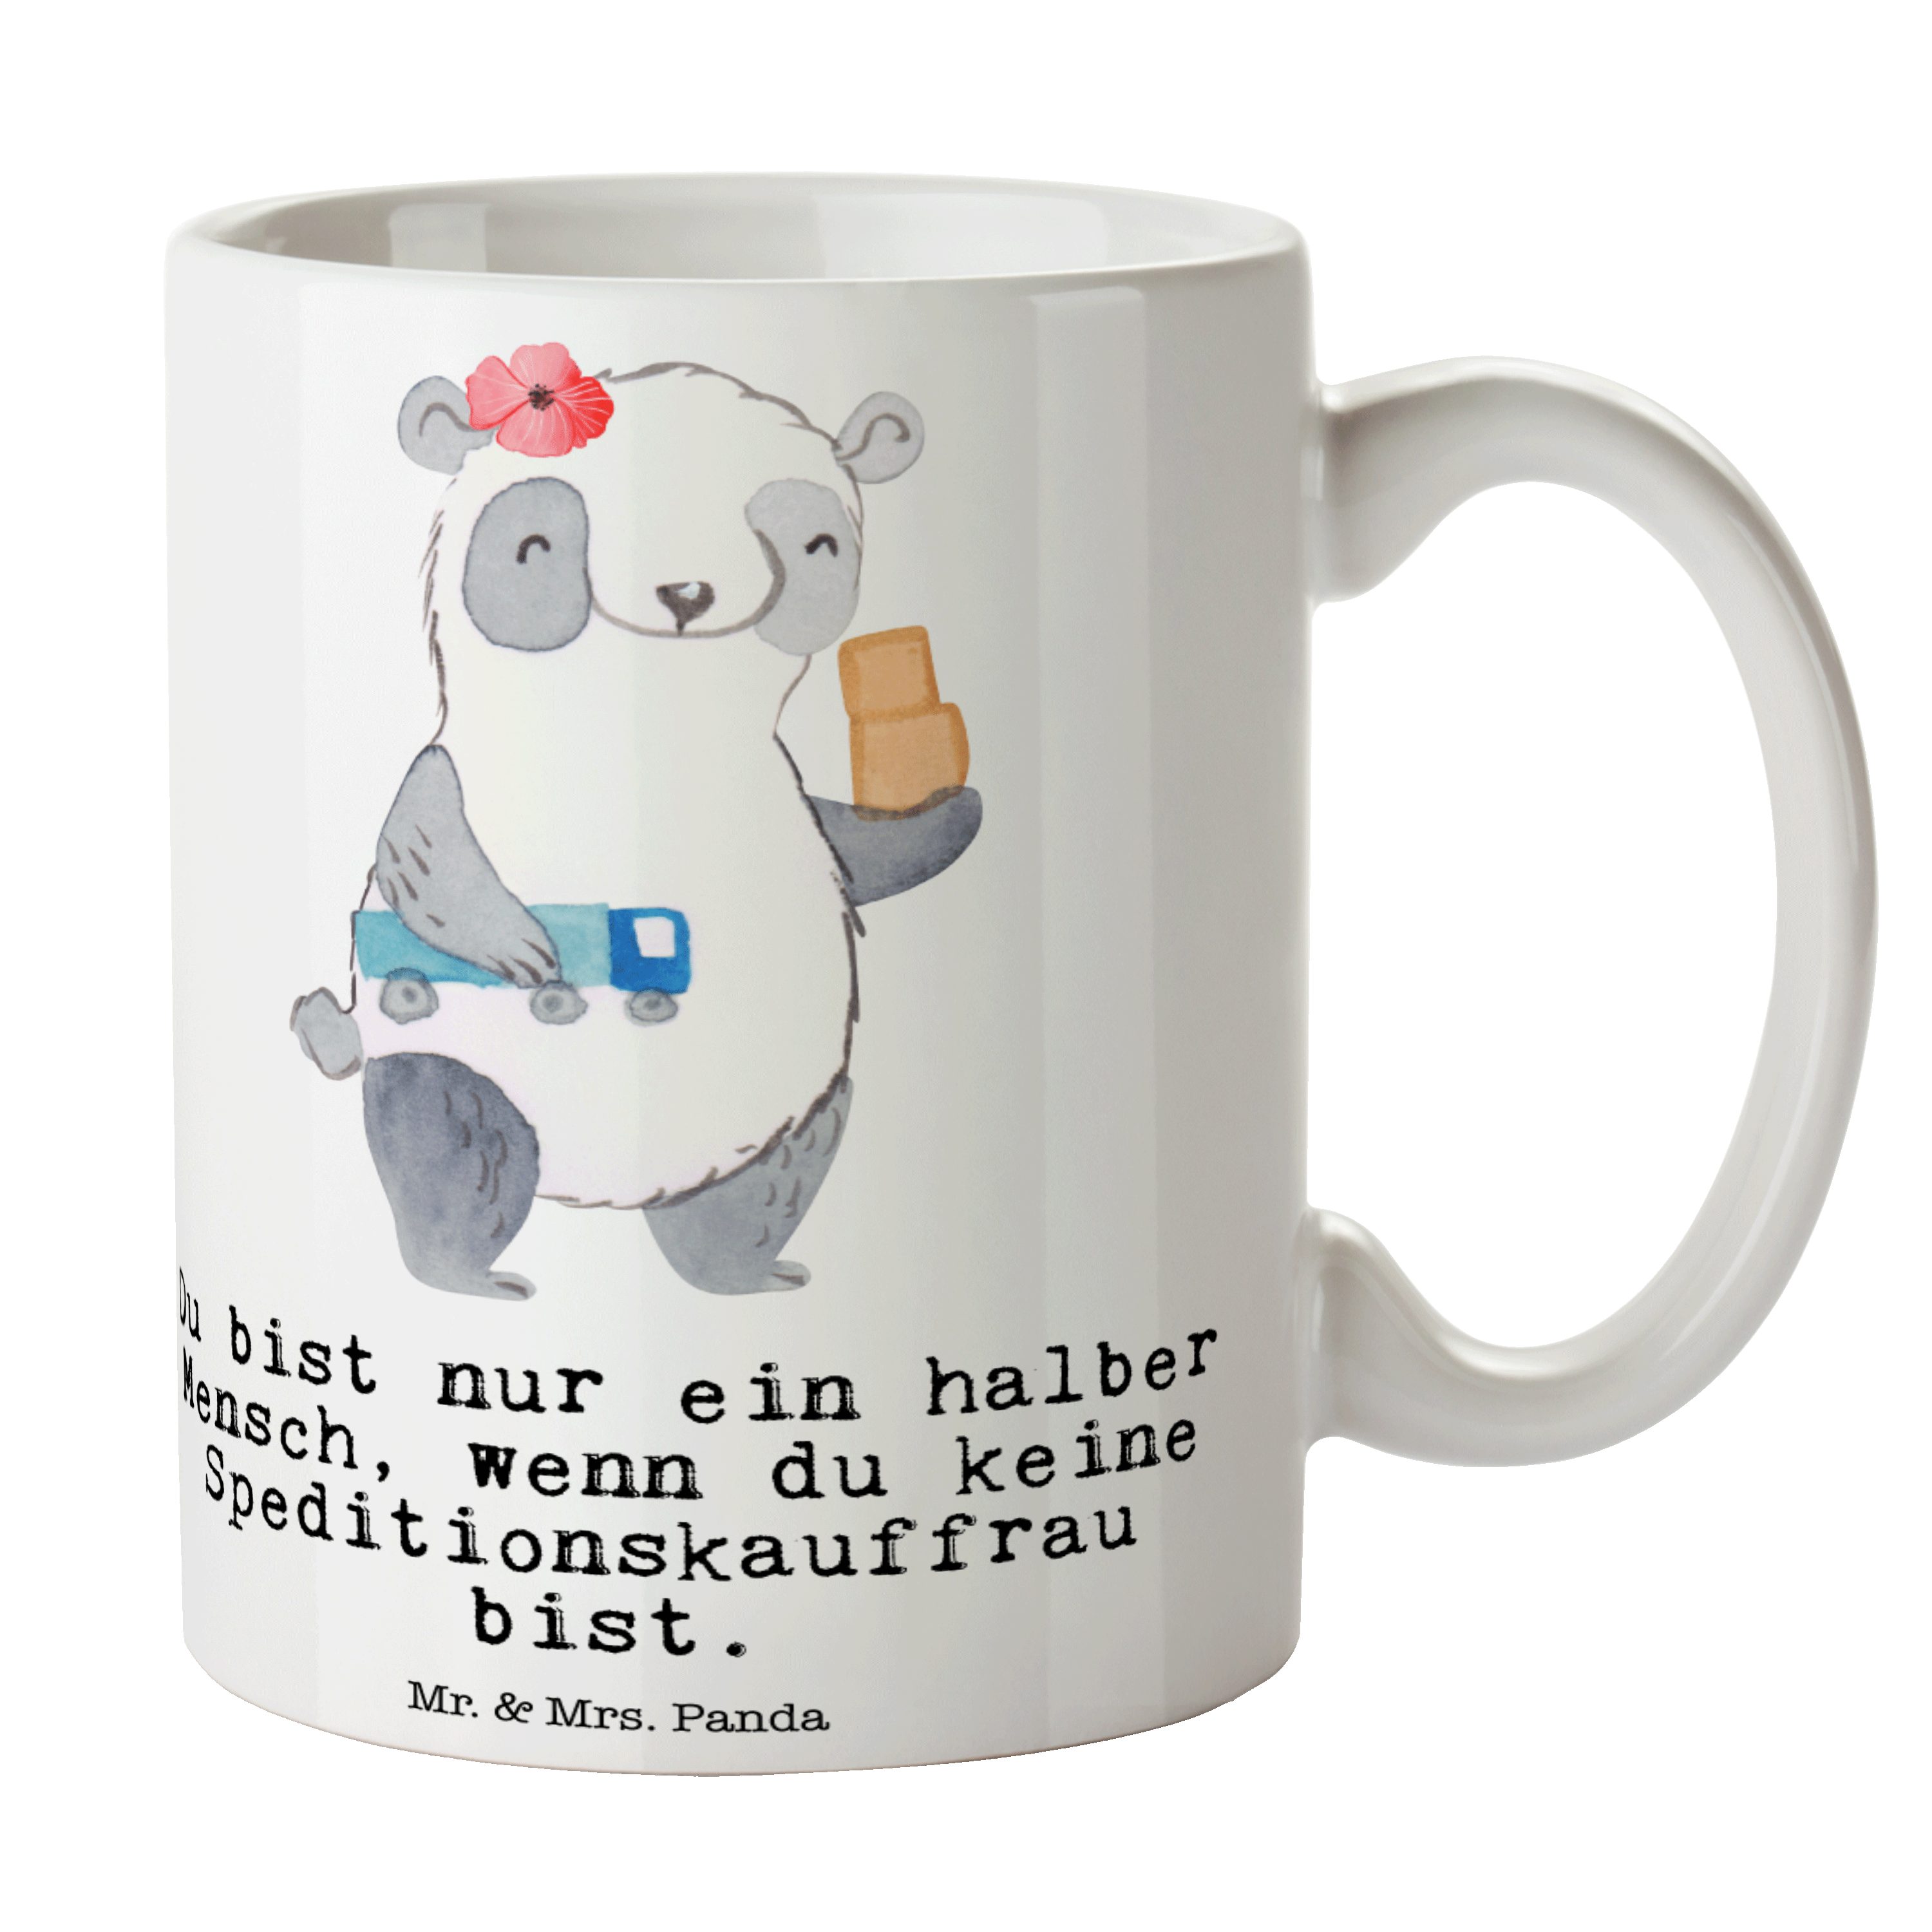 & Mr. - Panda Herz Geschenk, Keramik Tasse mit Weiß Geschenk, Speditionskauffrau Tasse - Mrs. Motive,